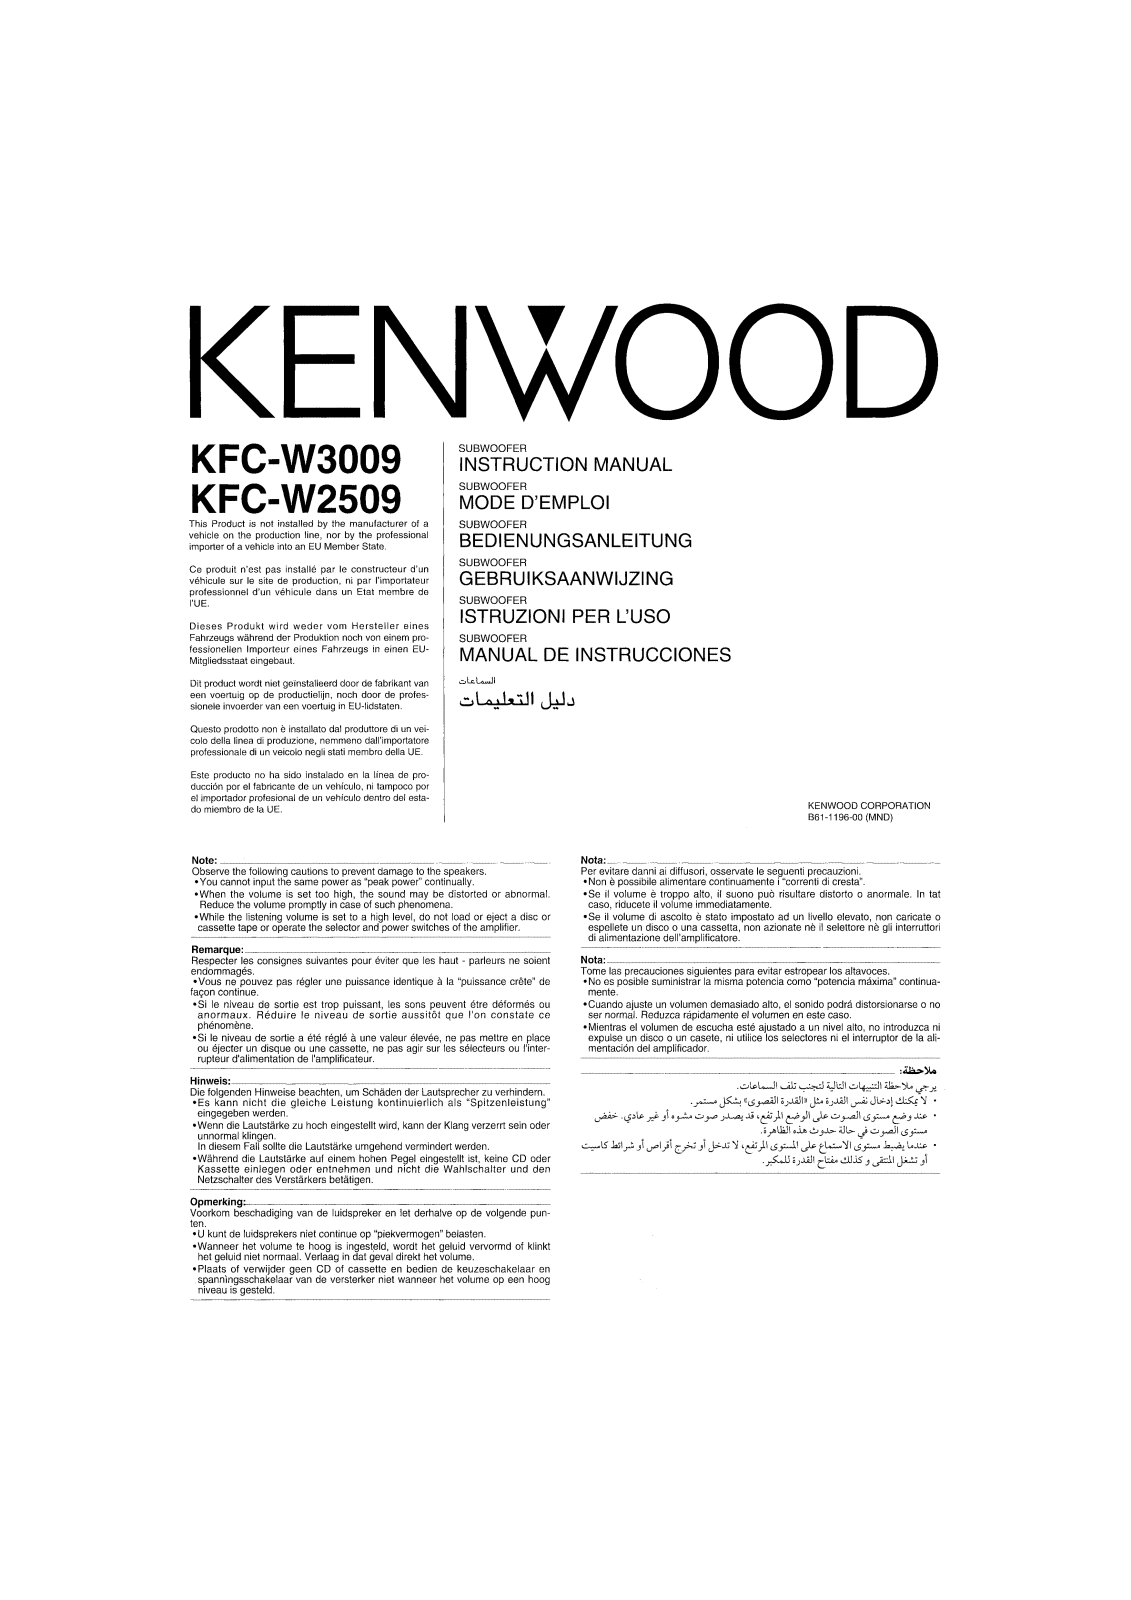 Kenwood KFC-W2509, KFC-W3009 User Manual